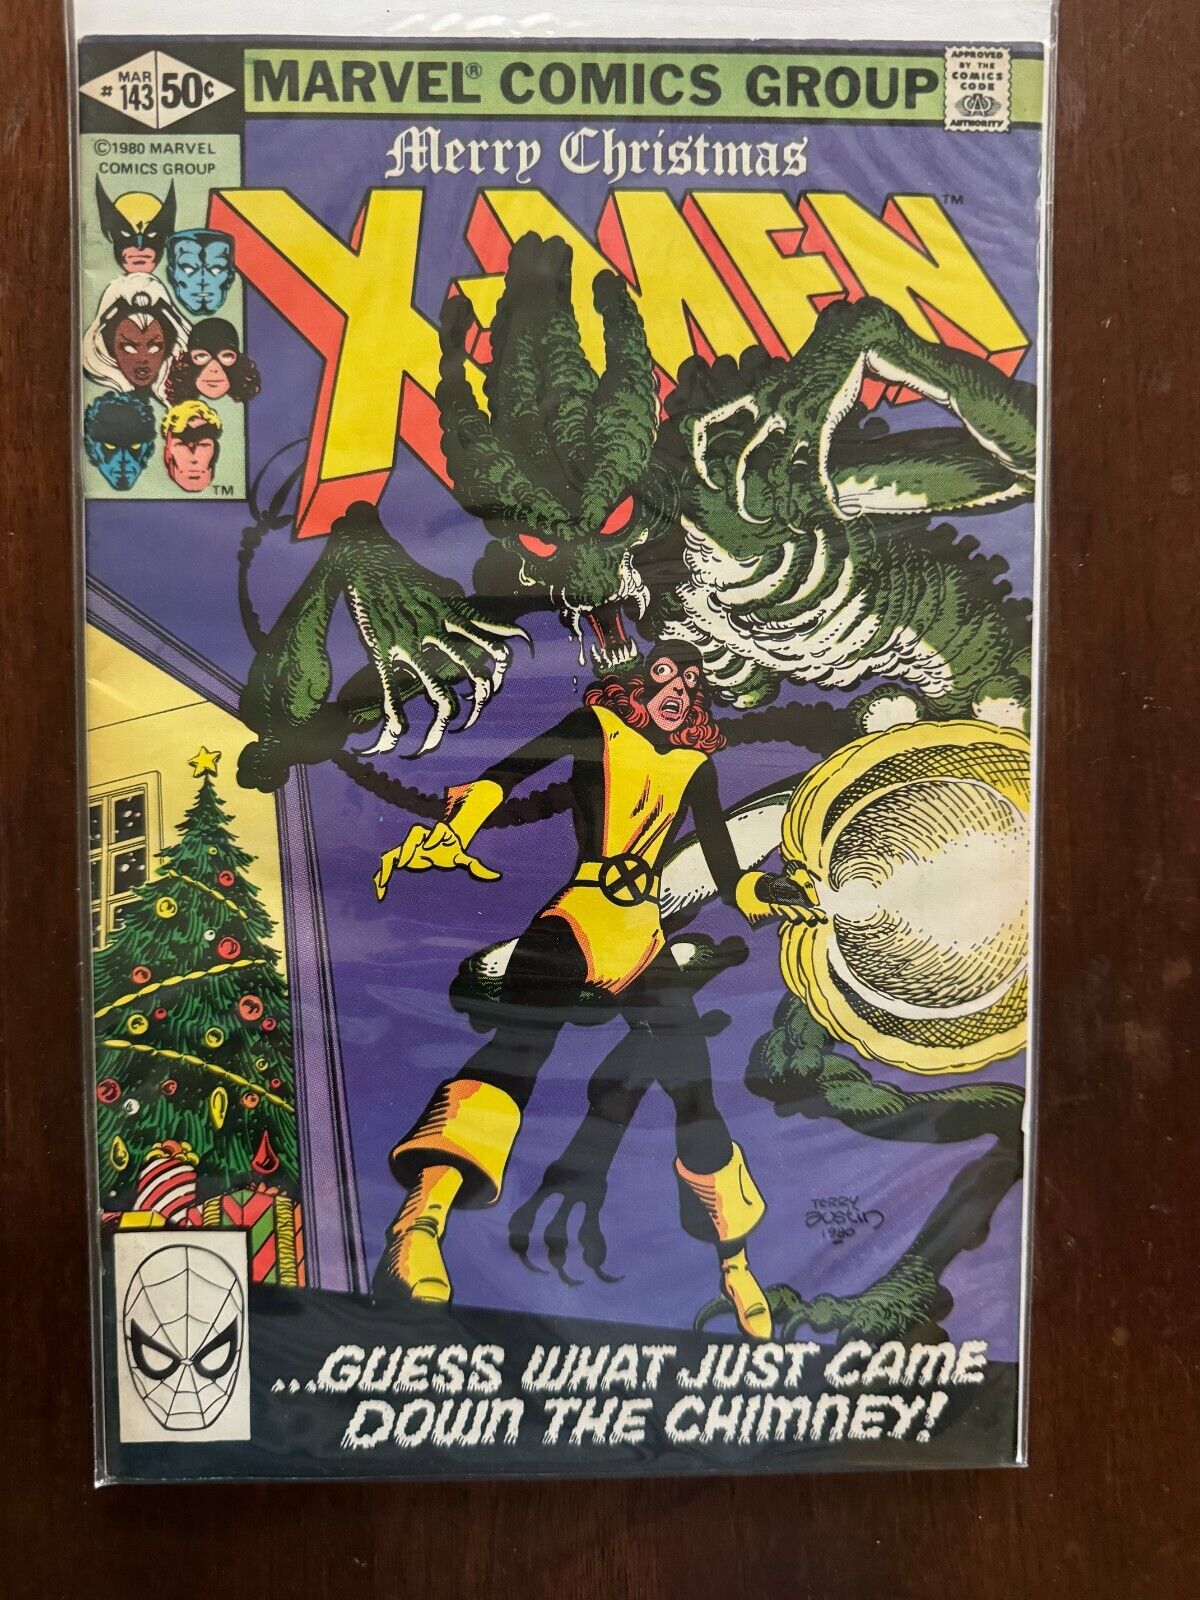 UNCANNY X-MEN #143 1980 Marvel Comics - Kitty Pryde